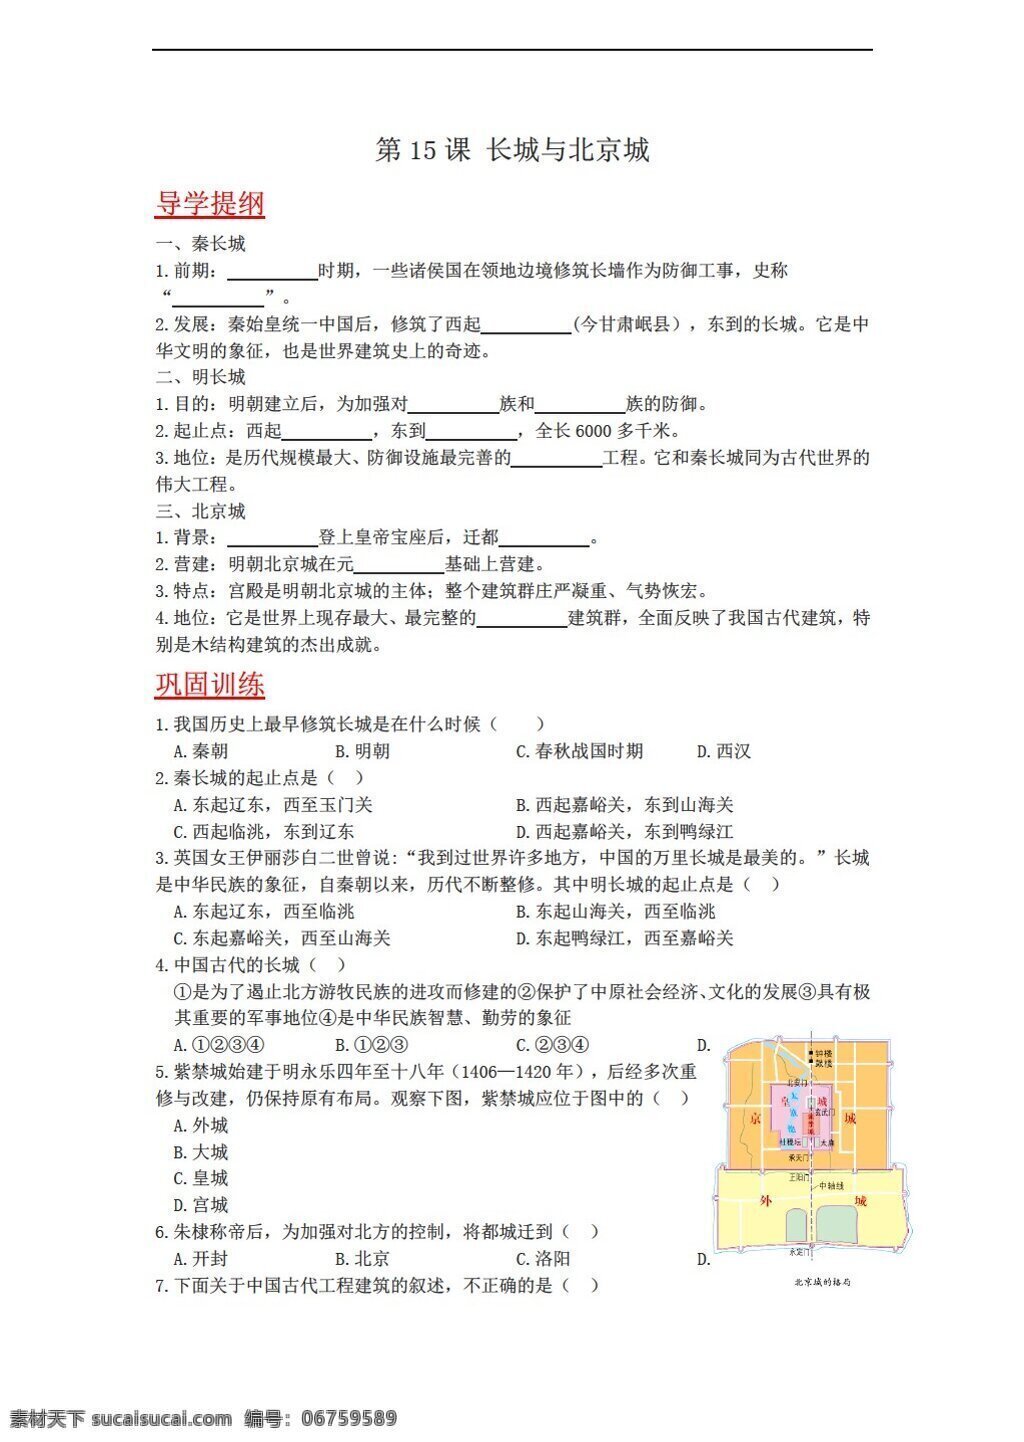 七 年级 下册 历史 课 长城与北京城 学案含答案 川教版 七年级下册 学案